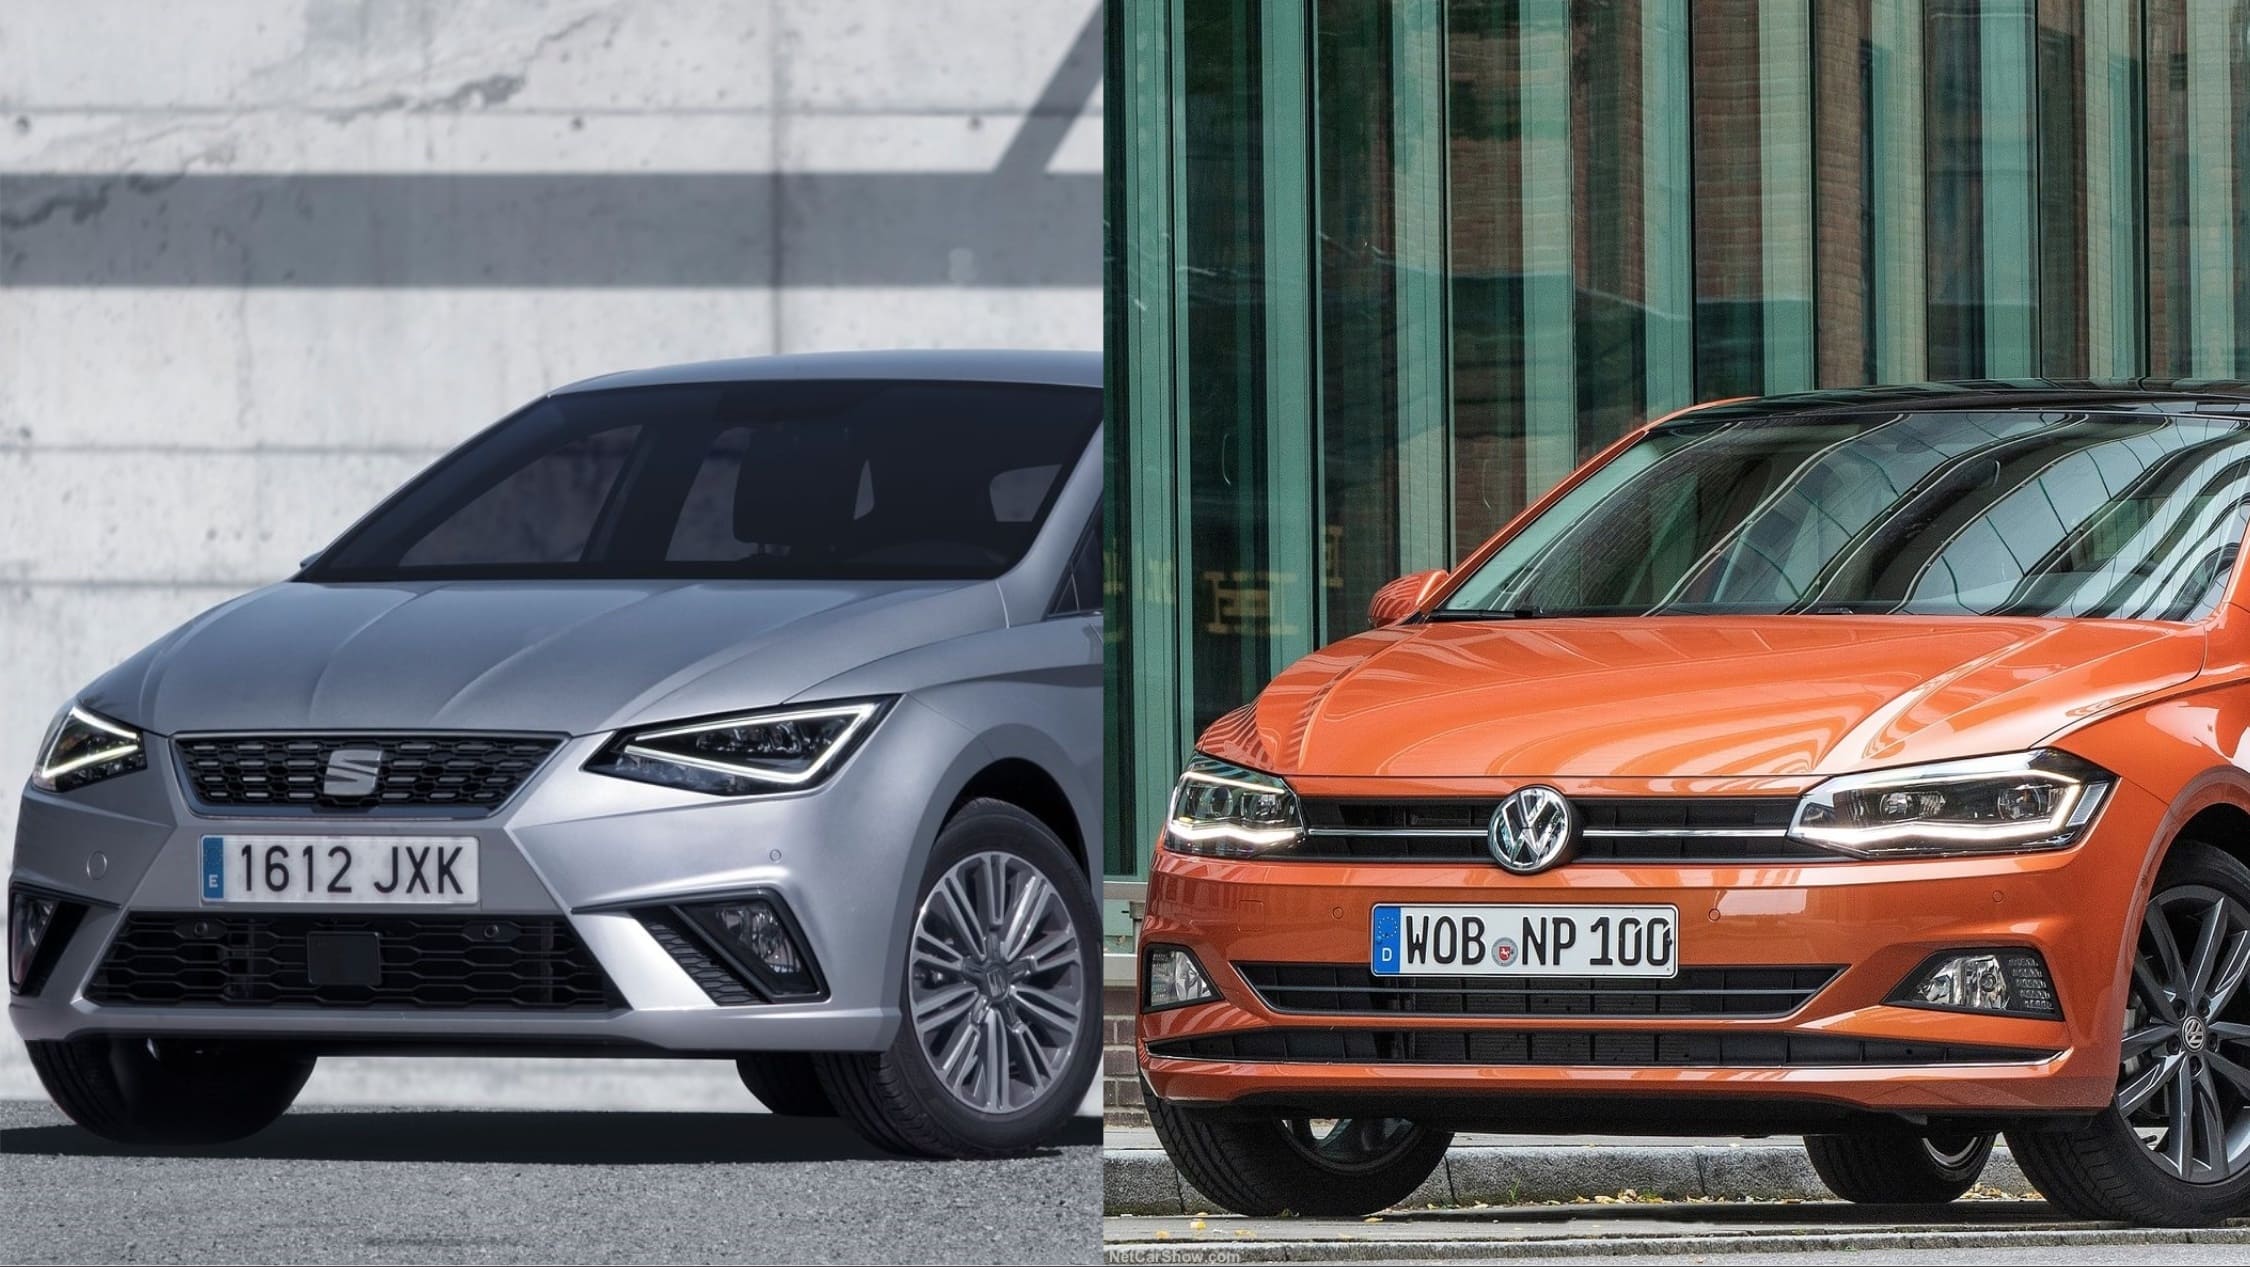 Seat Ibiza o Volkswagen Polo, ¿Cuál elegir?